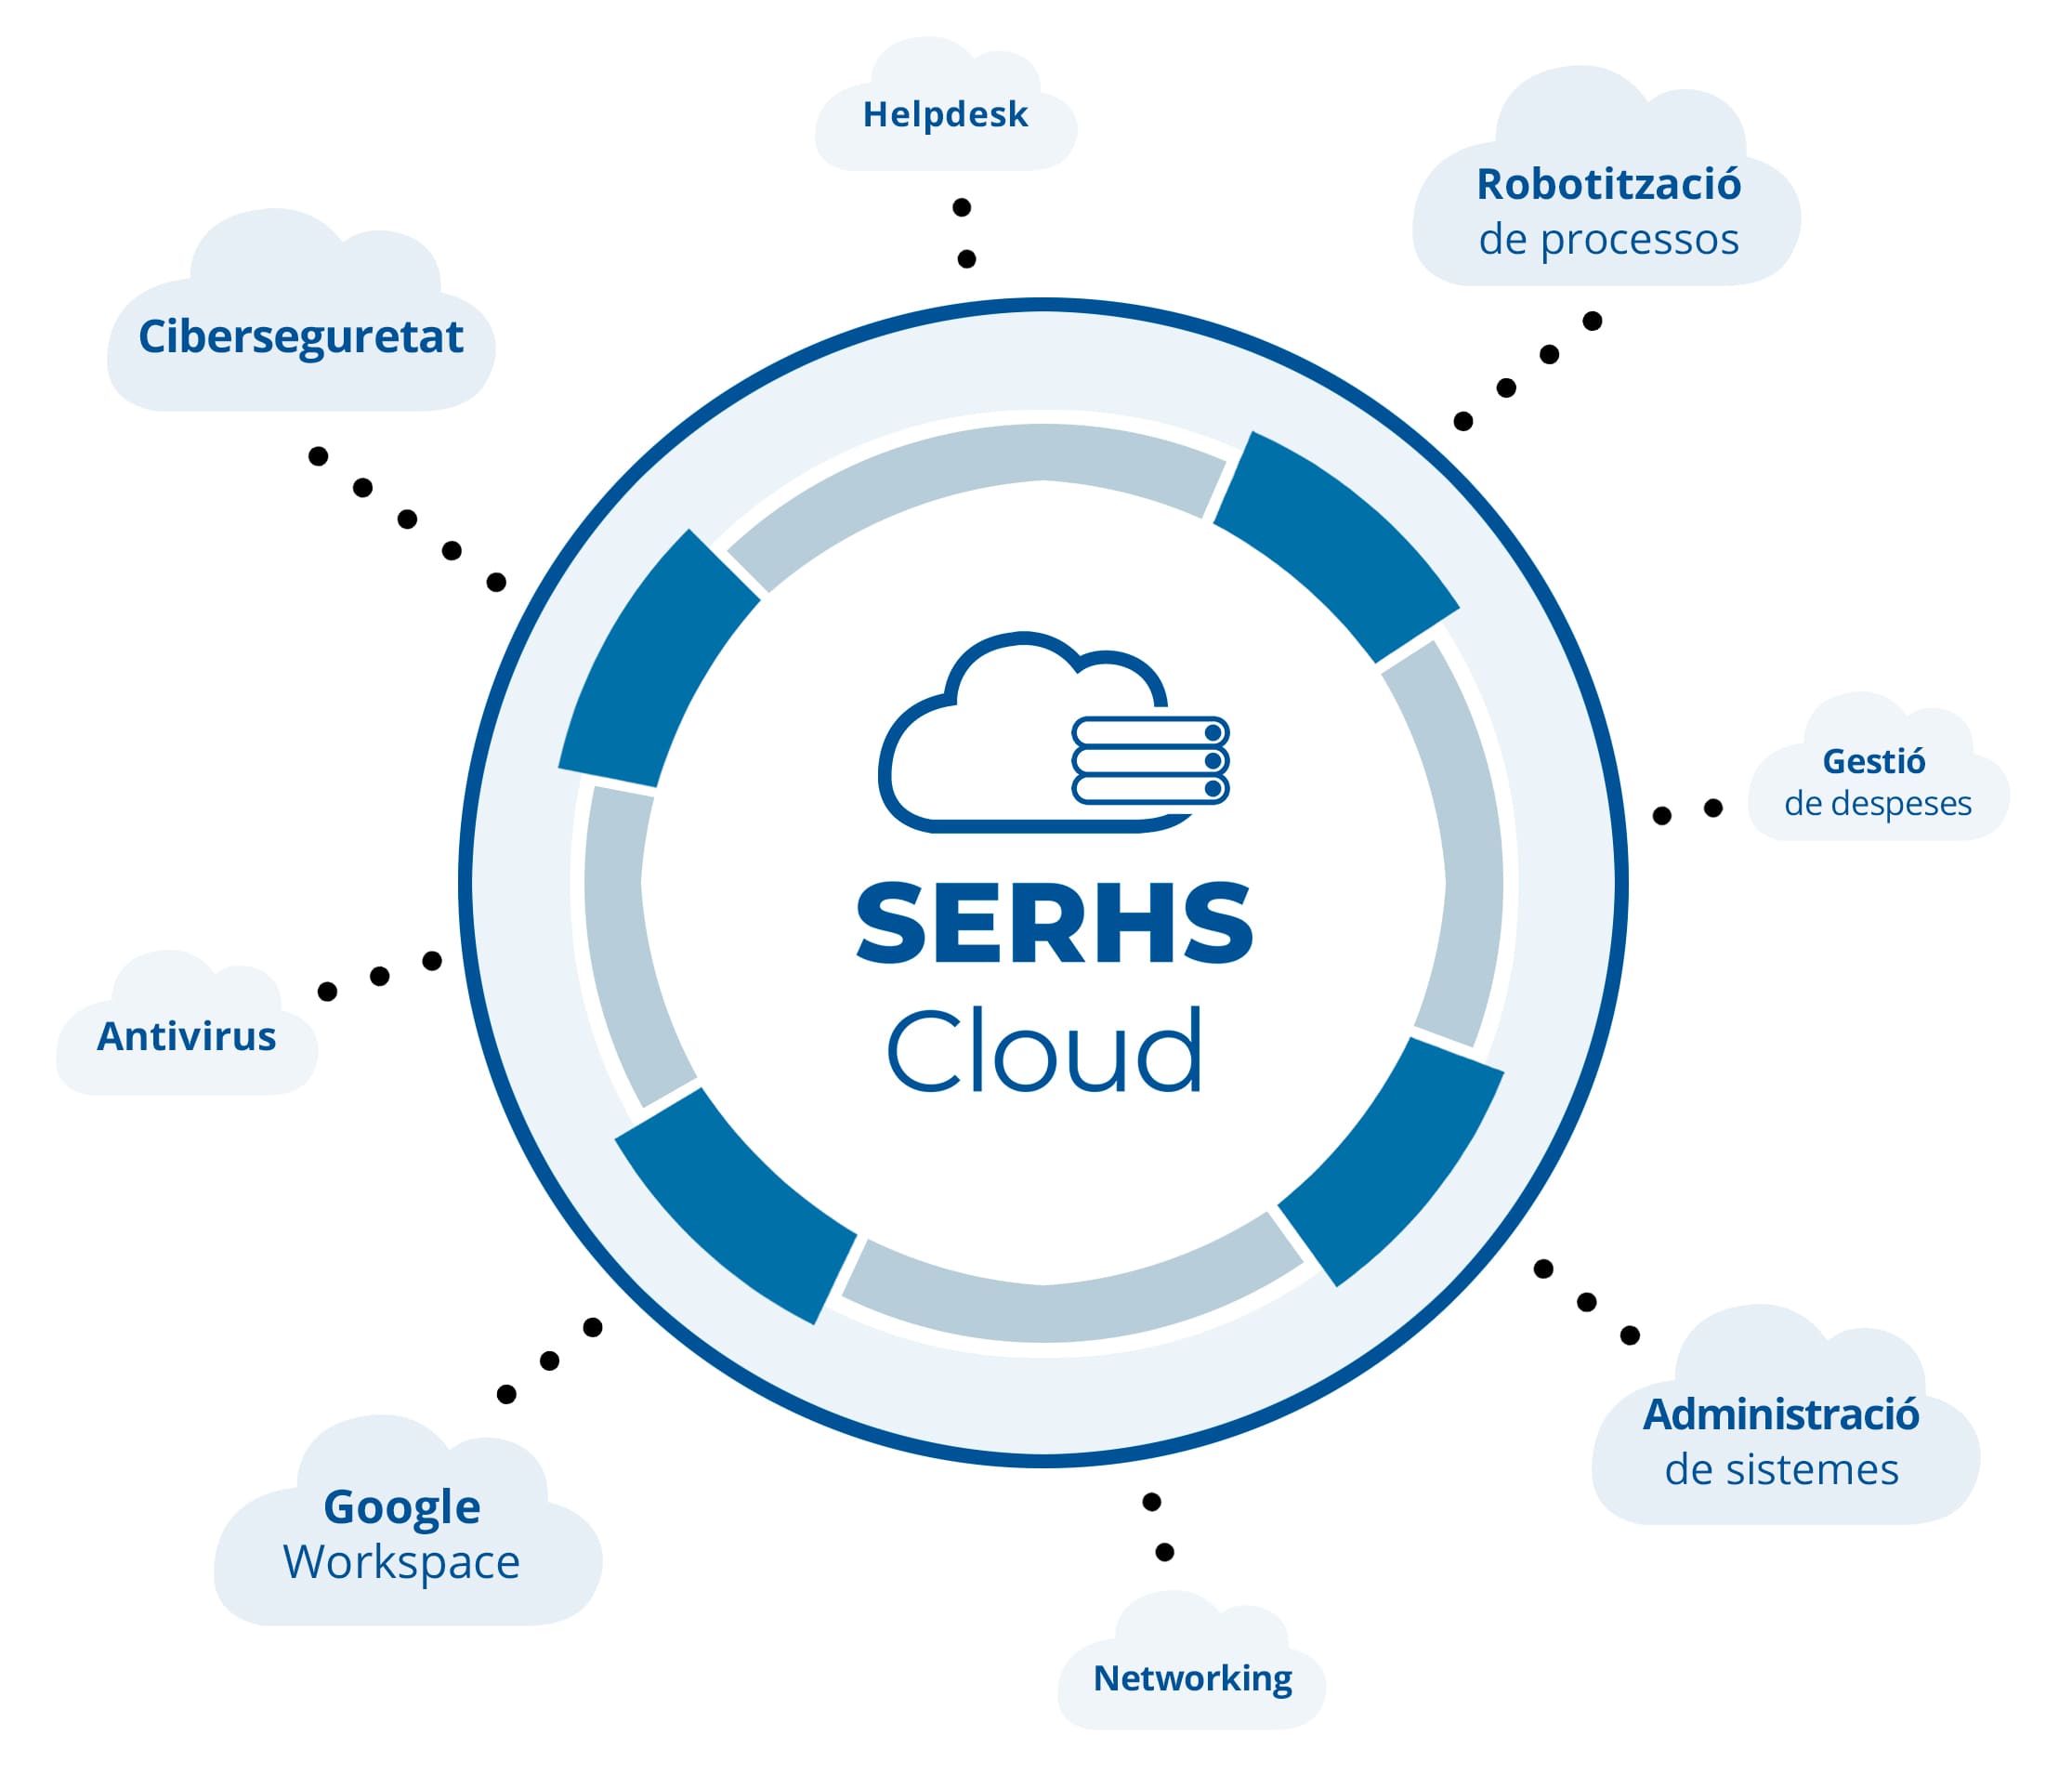 SERHS Cloud Digitalització per a PIMEs